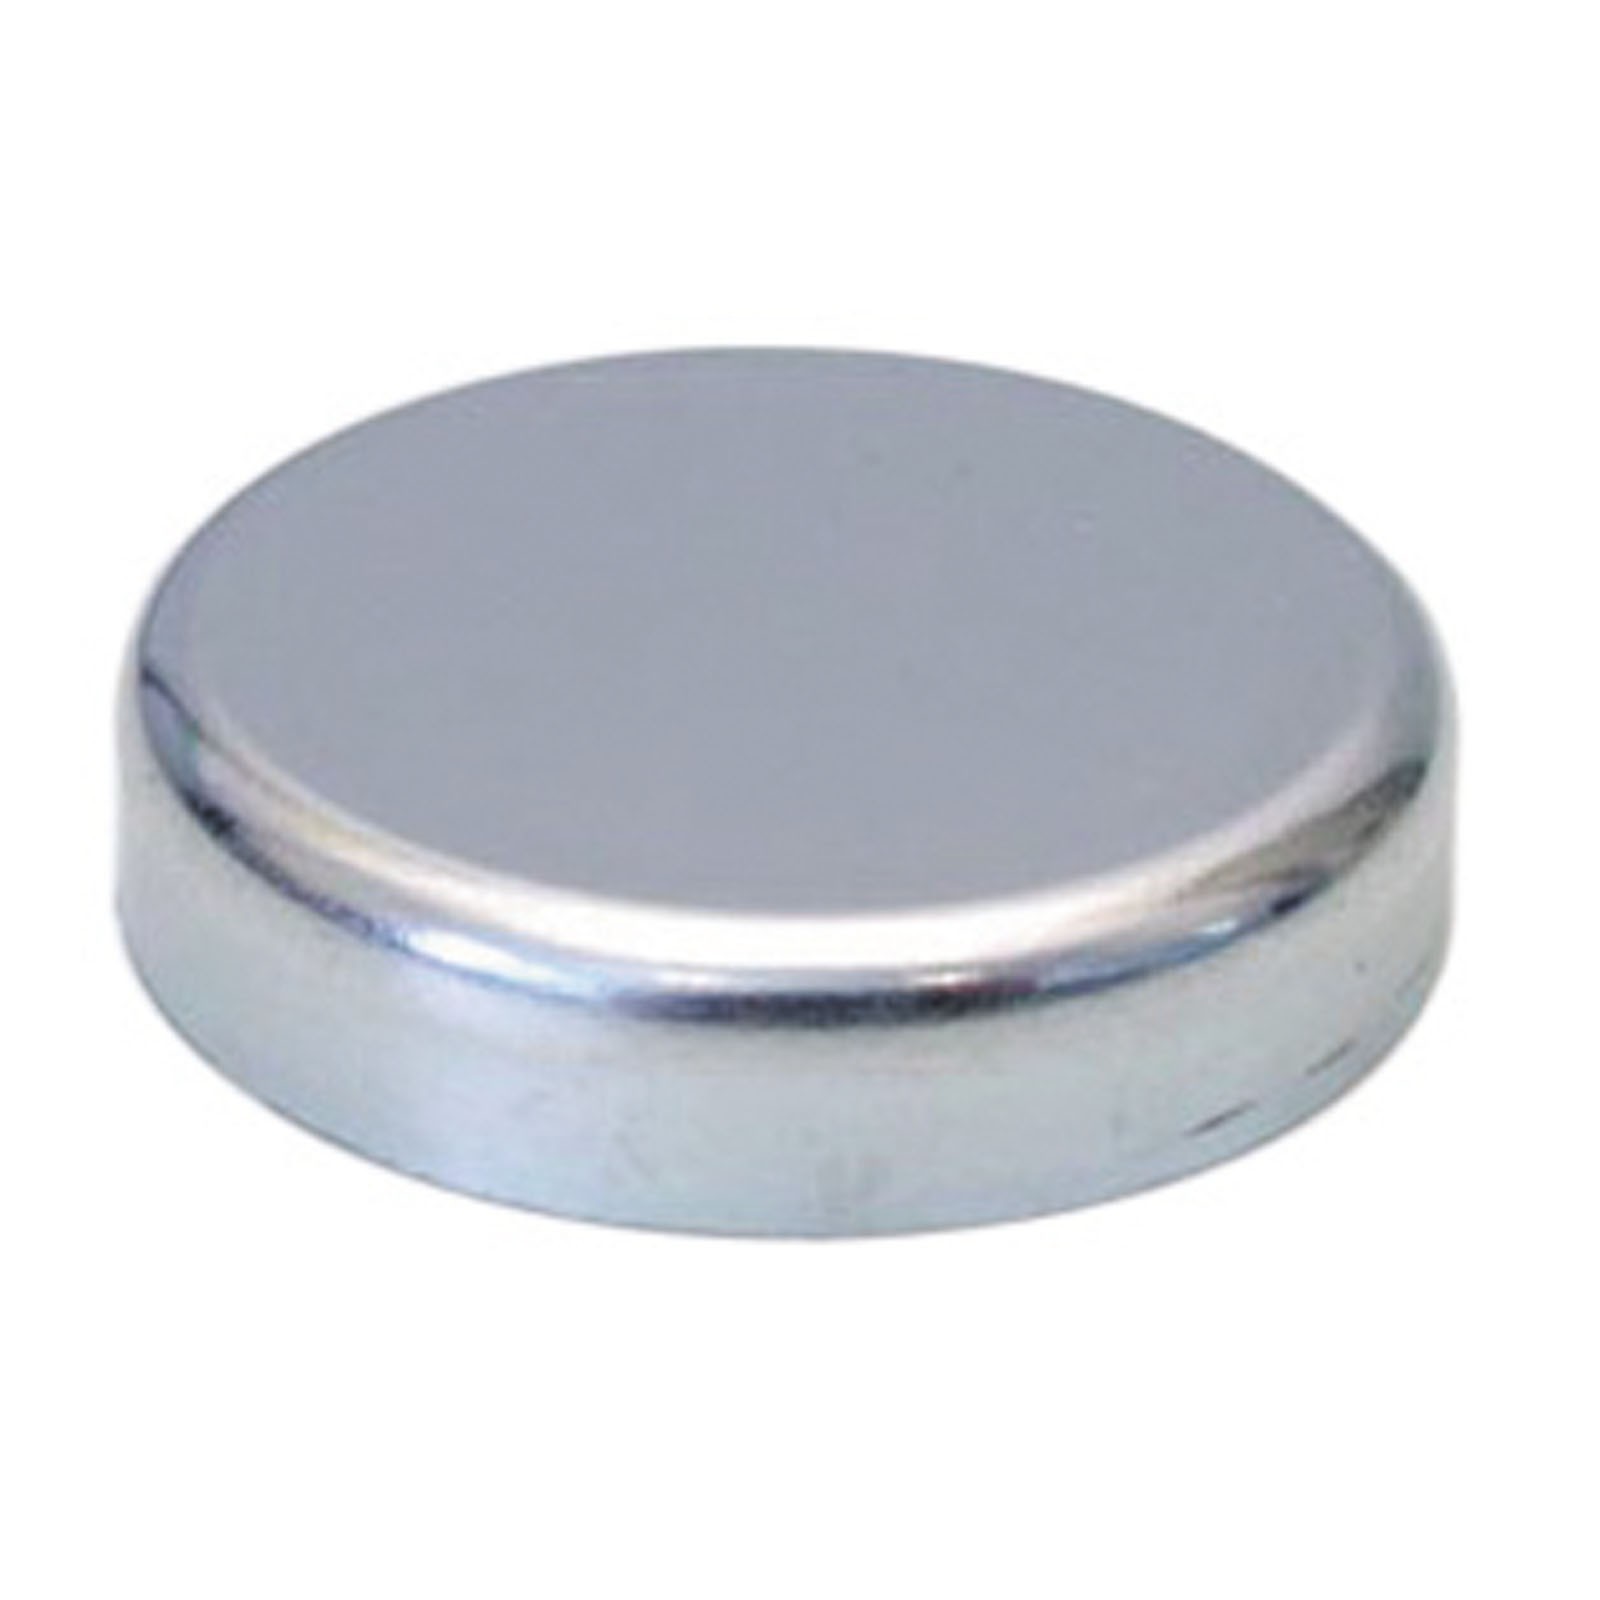 Flachgreifer Magnet Neodym Magnetfuß Oxit Hartferrit div Größen bis 125mm 1300 N Größe:100.0 mm von Rimag